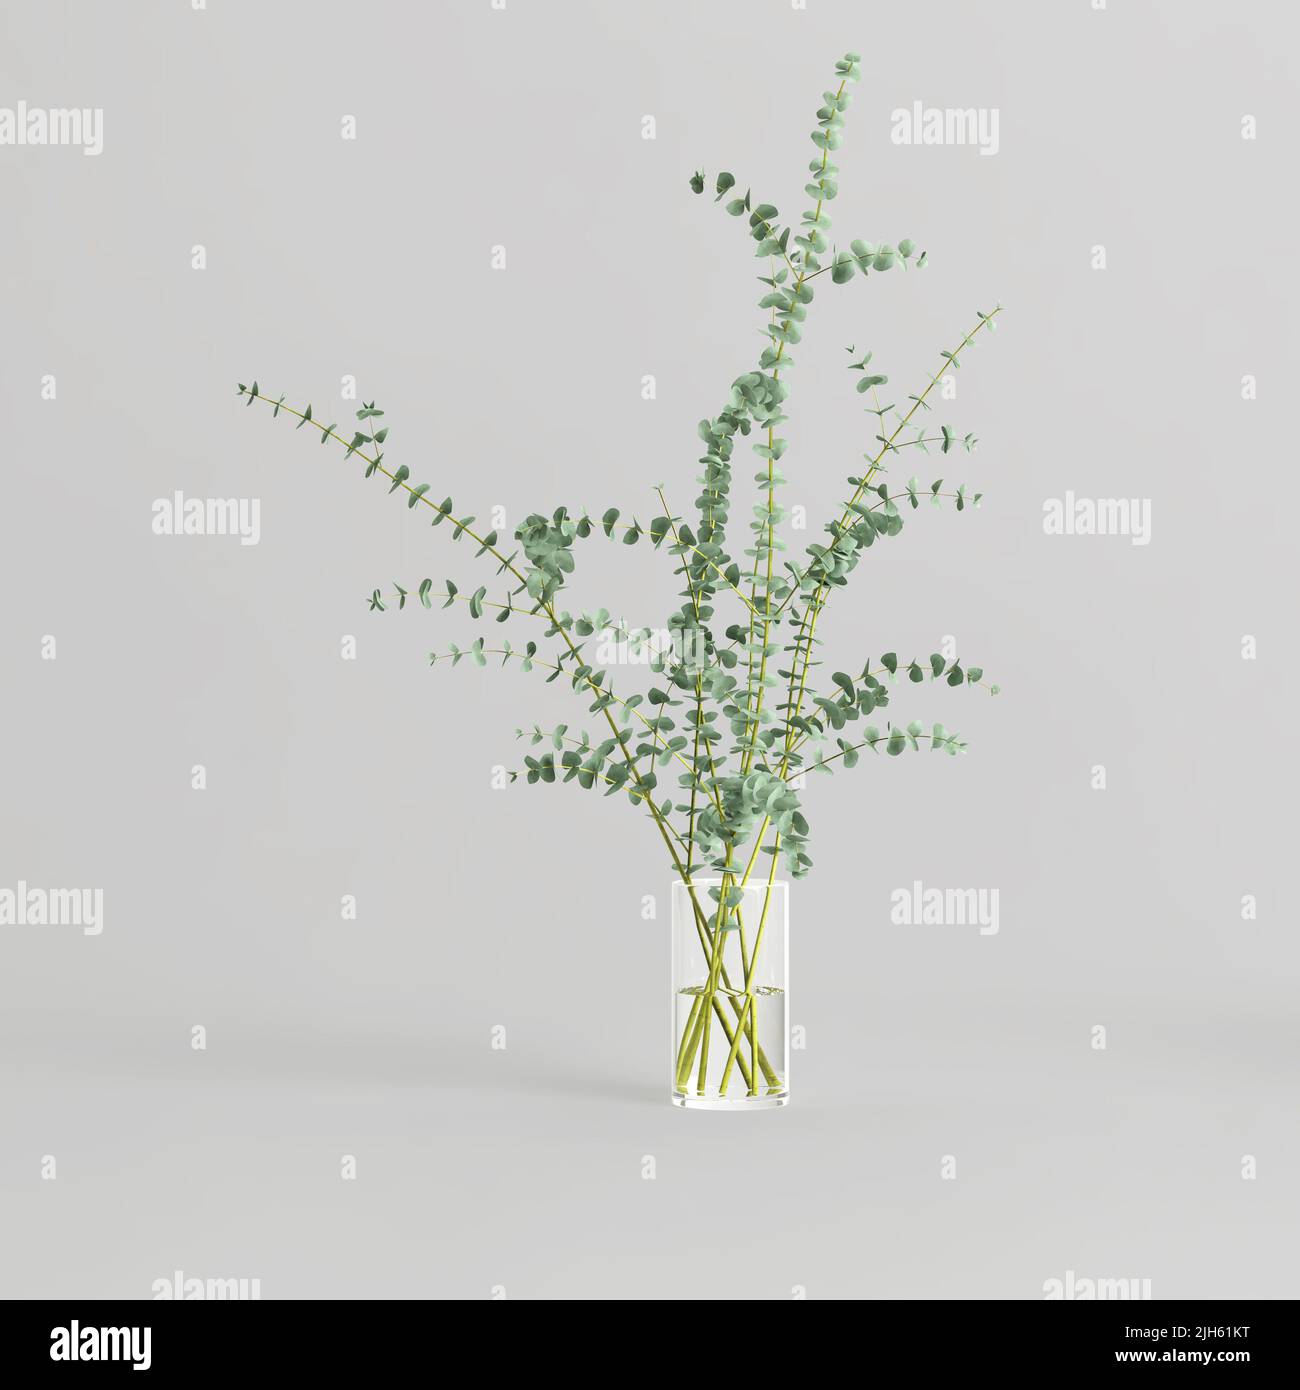 3d illustration of decorative vase inside isolated on white background Stock Photo